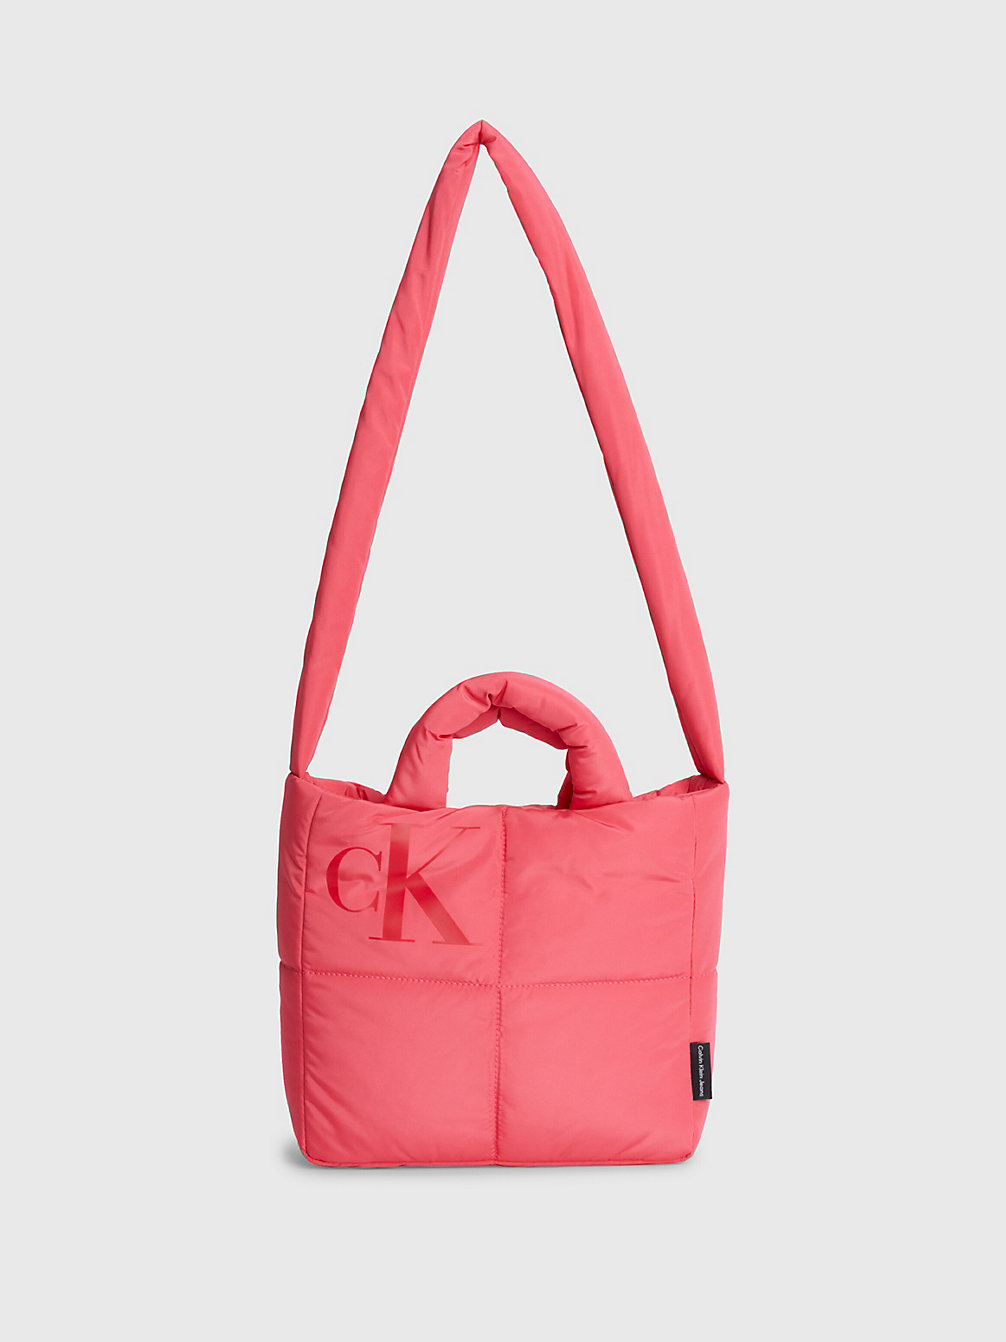 PINK FLASH Crossbody Bag Mit Gestepptem Design Für Kinder undefined kids unisex Calvin Klein